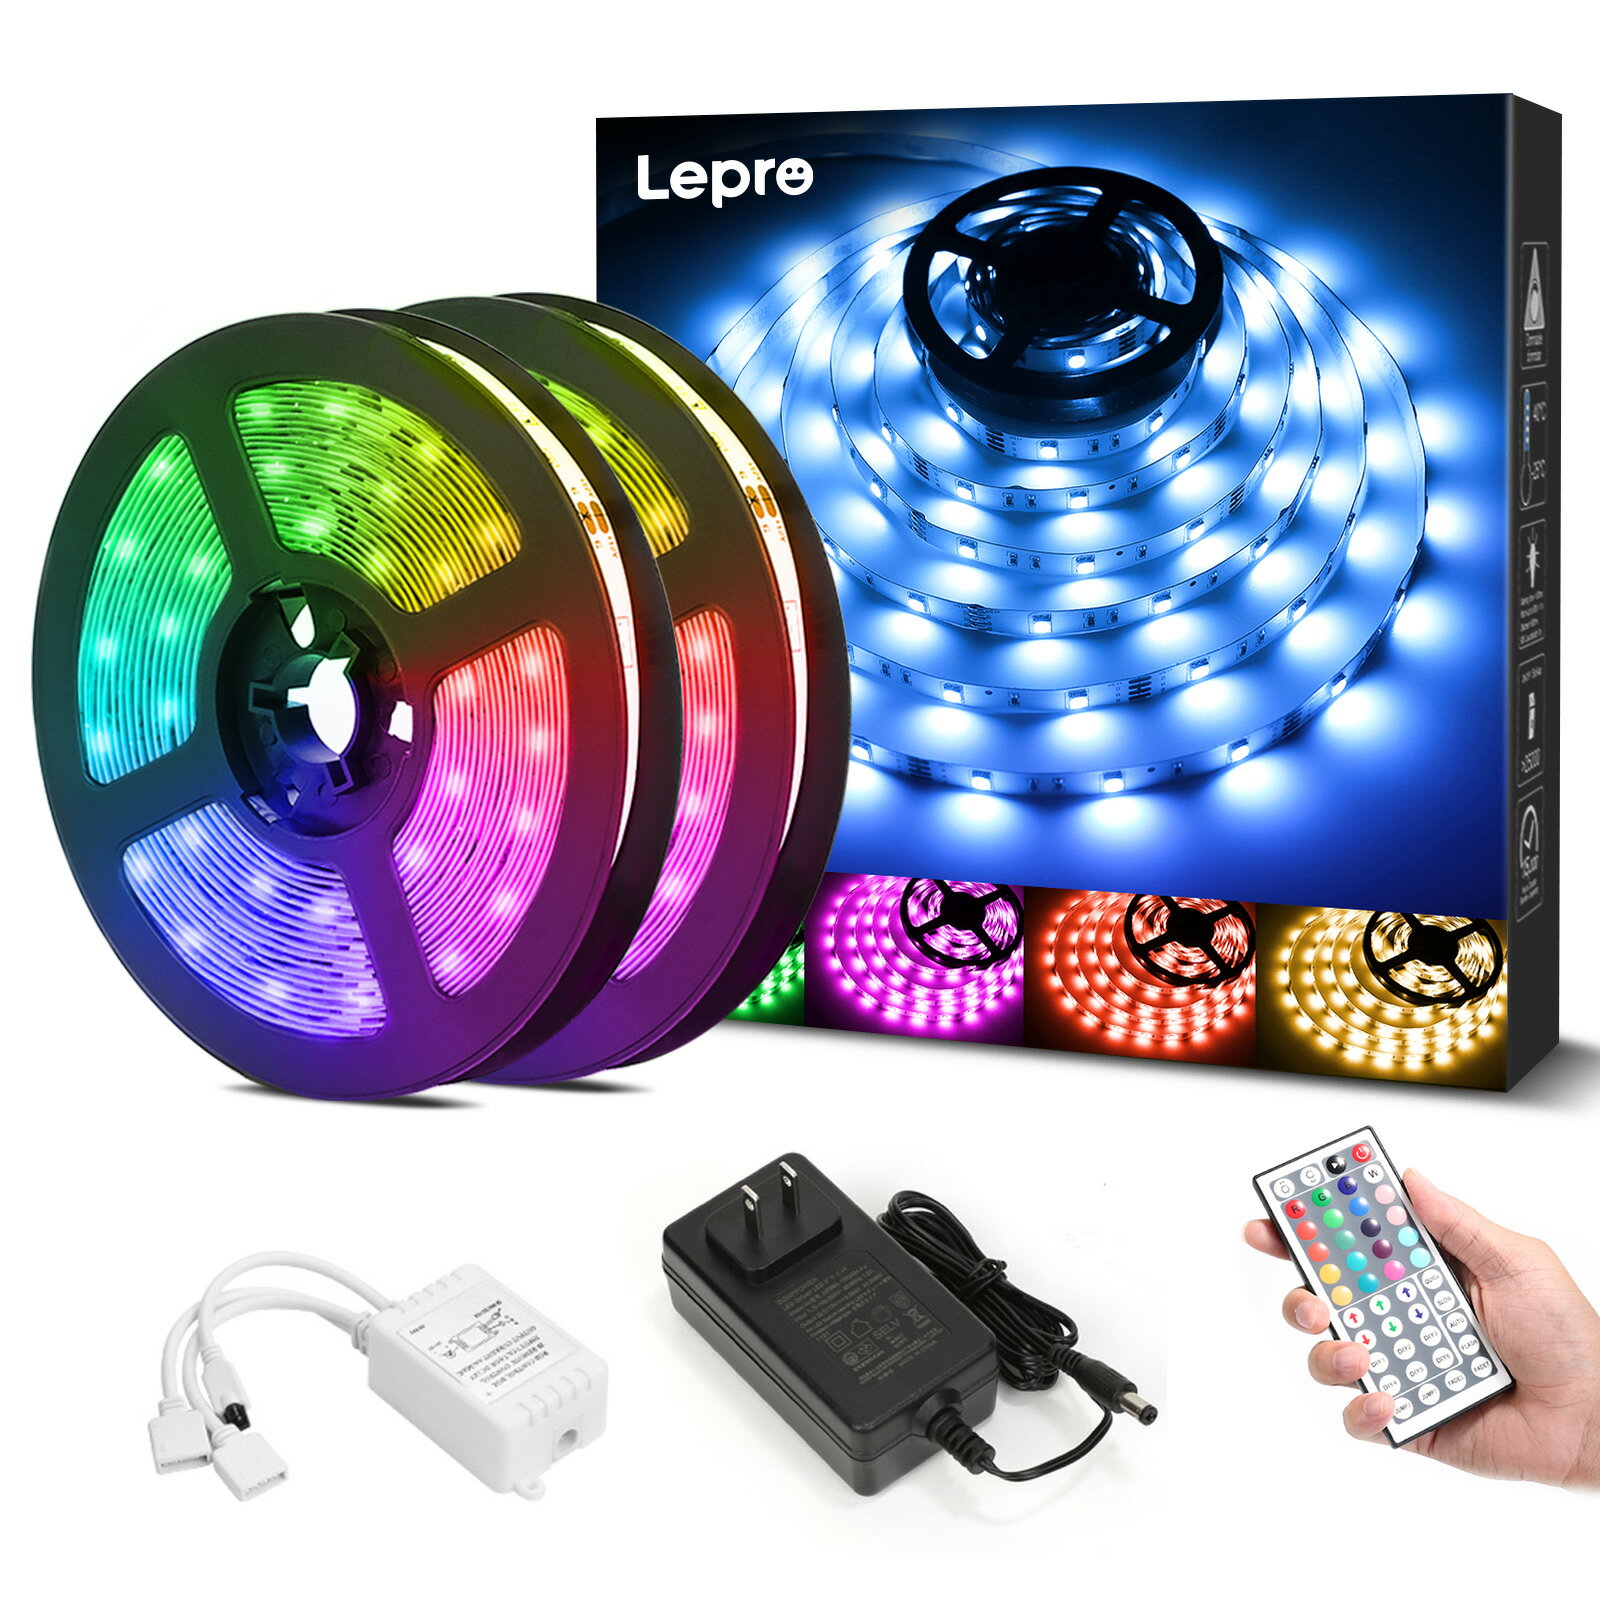 【2年保証】Lepro ledテープライト 10m( 5m*2巻) テープライト RGB 屋内用 明るさ...